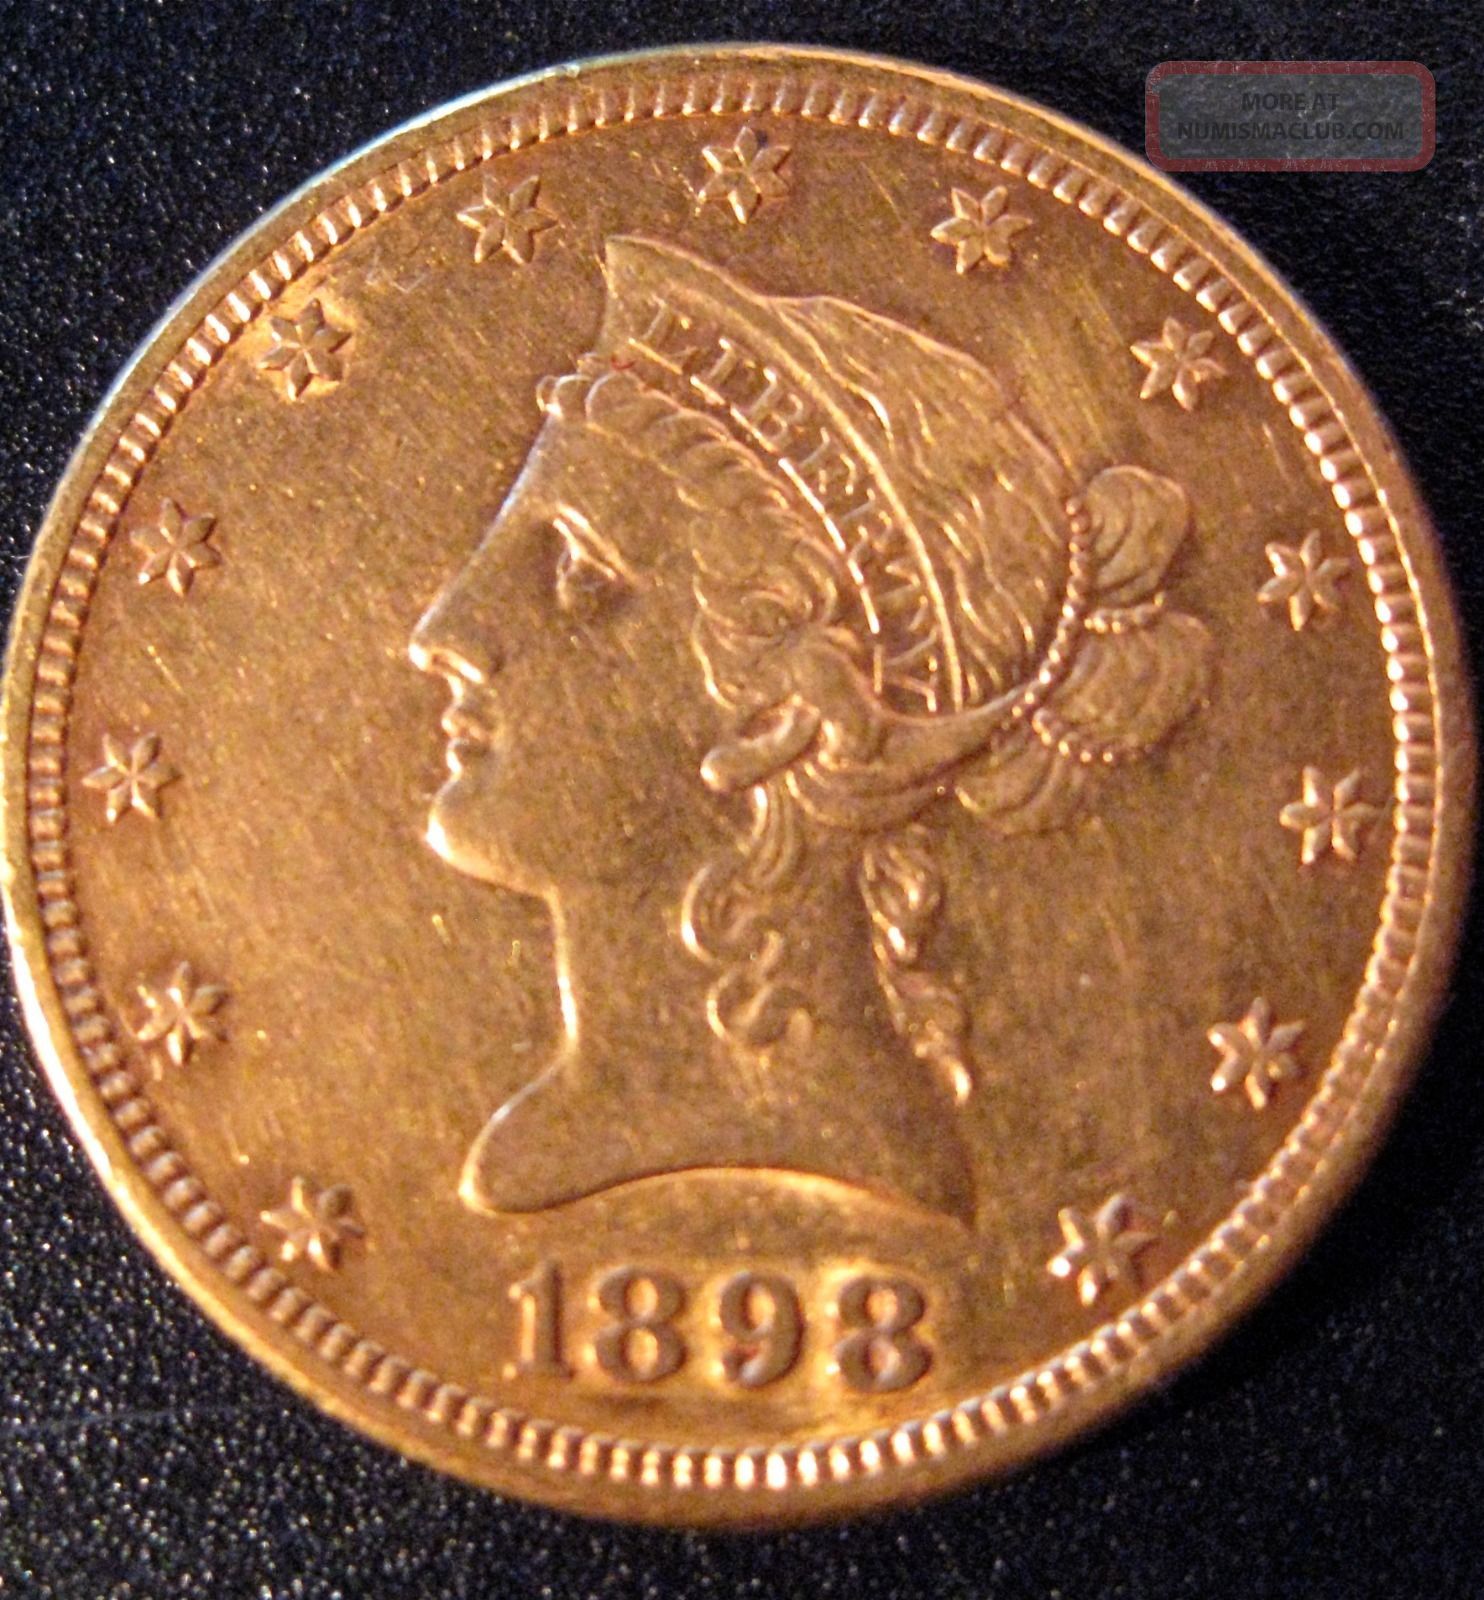 1898 Liberty Head Coronet Gold Eagle Coin